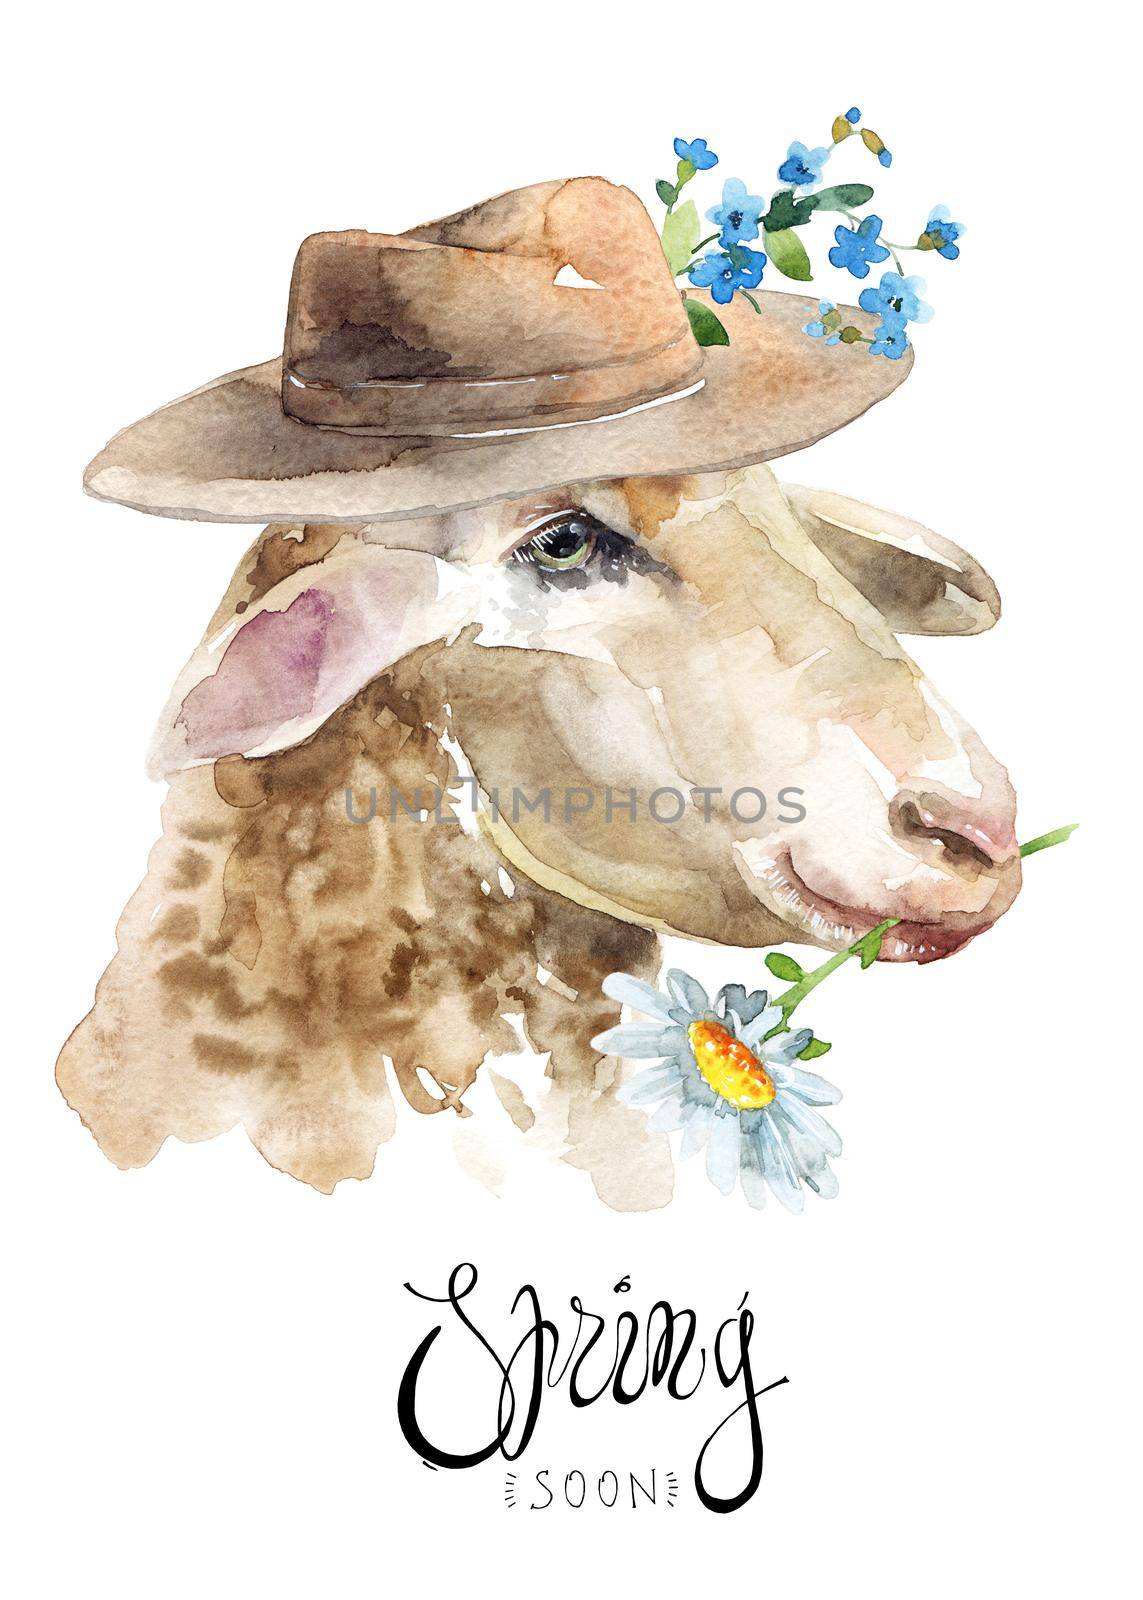 Sheep with a hat by Olatarakanova